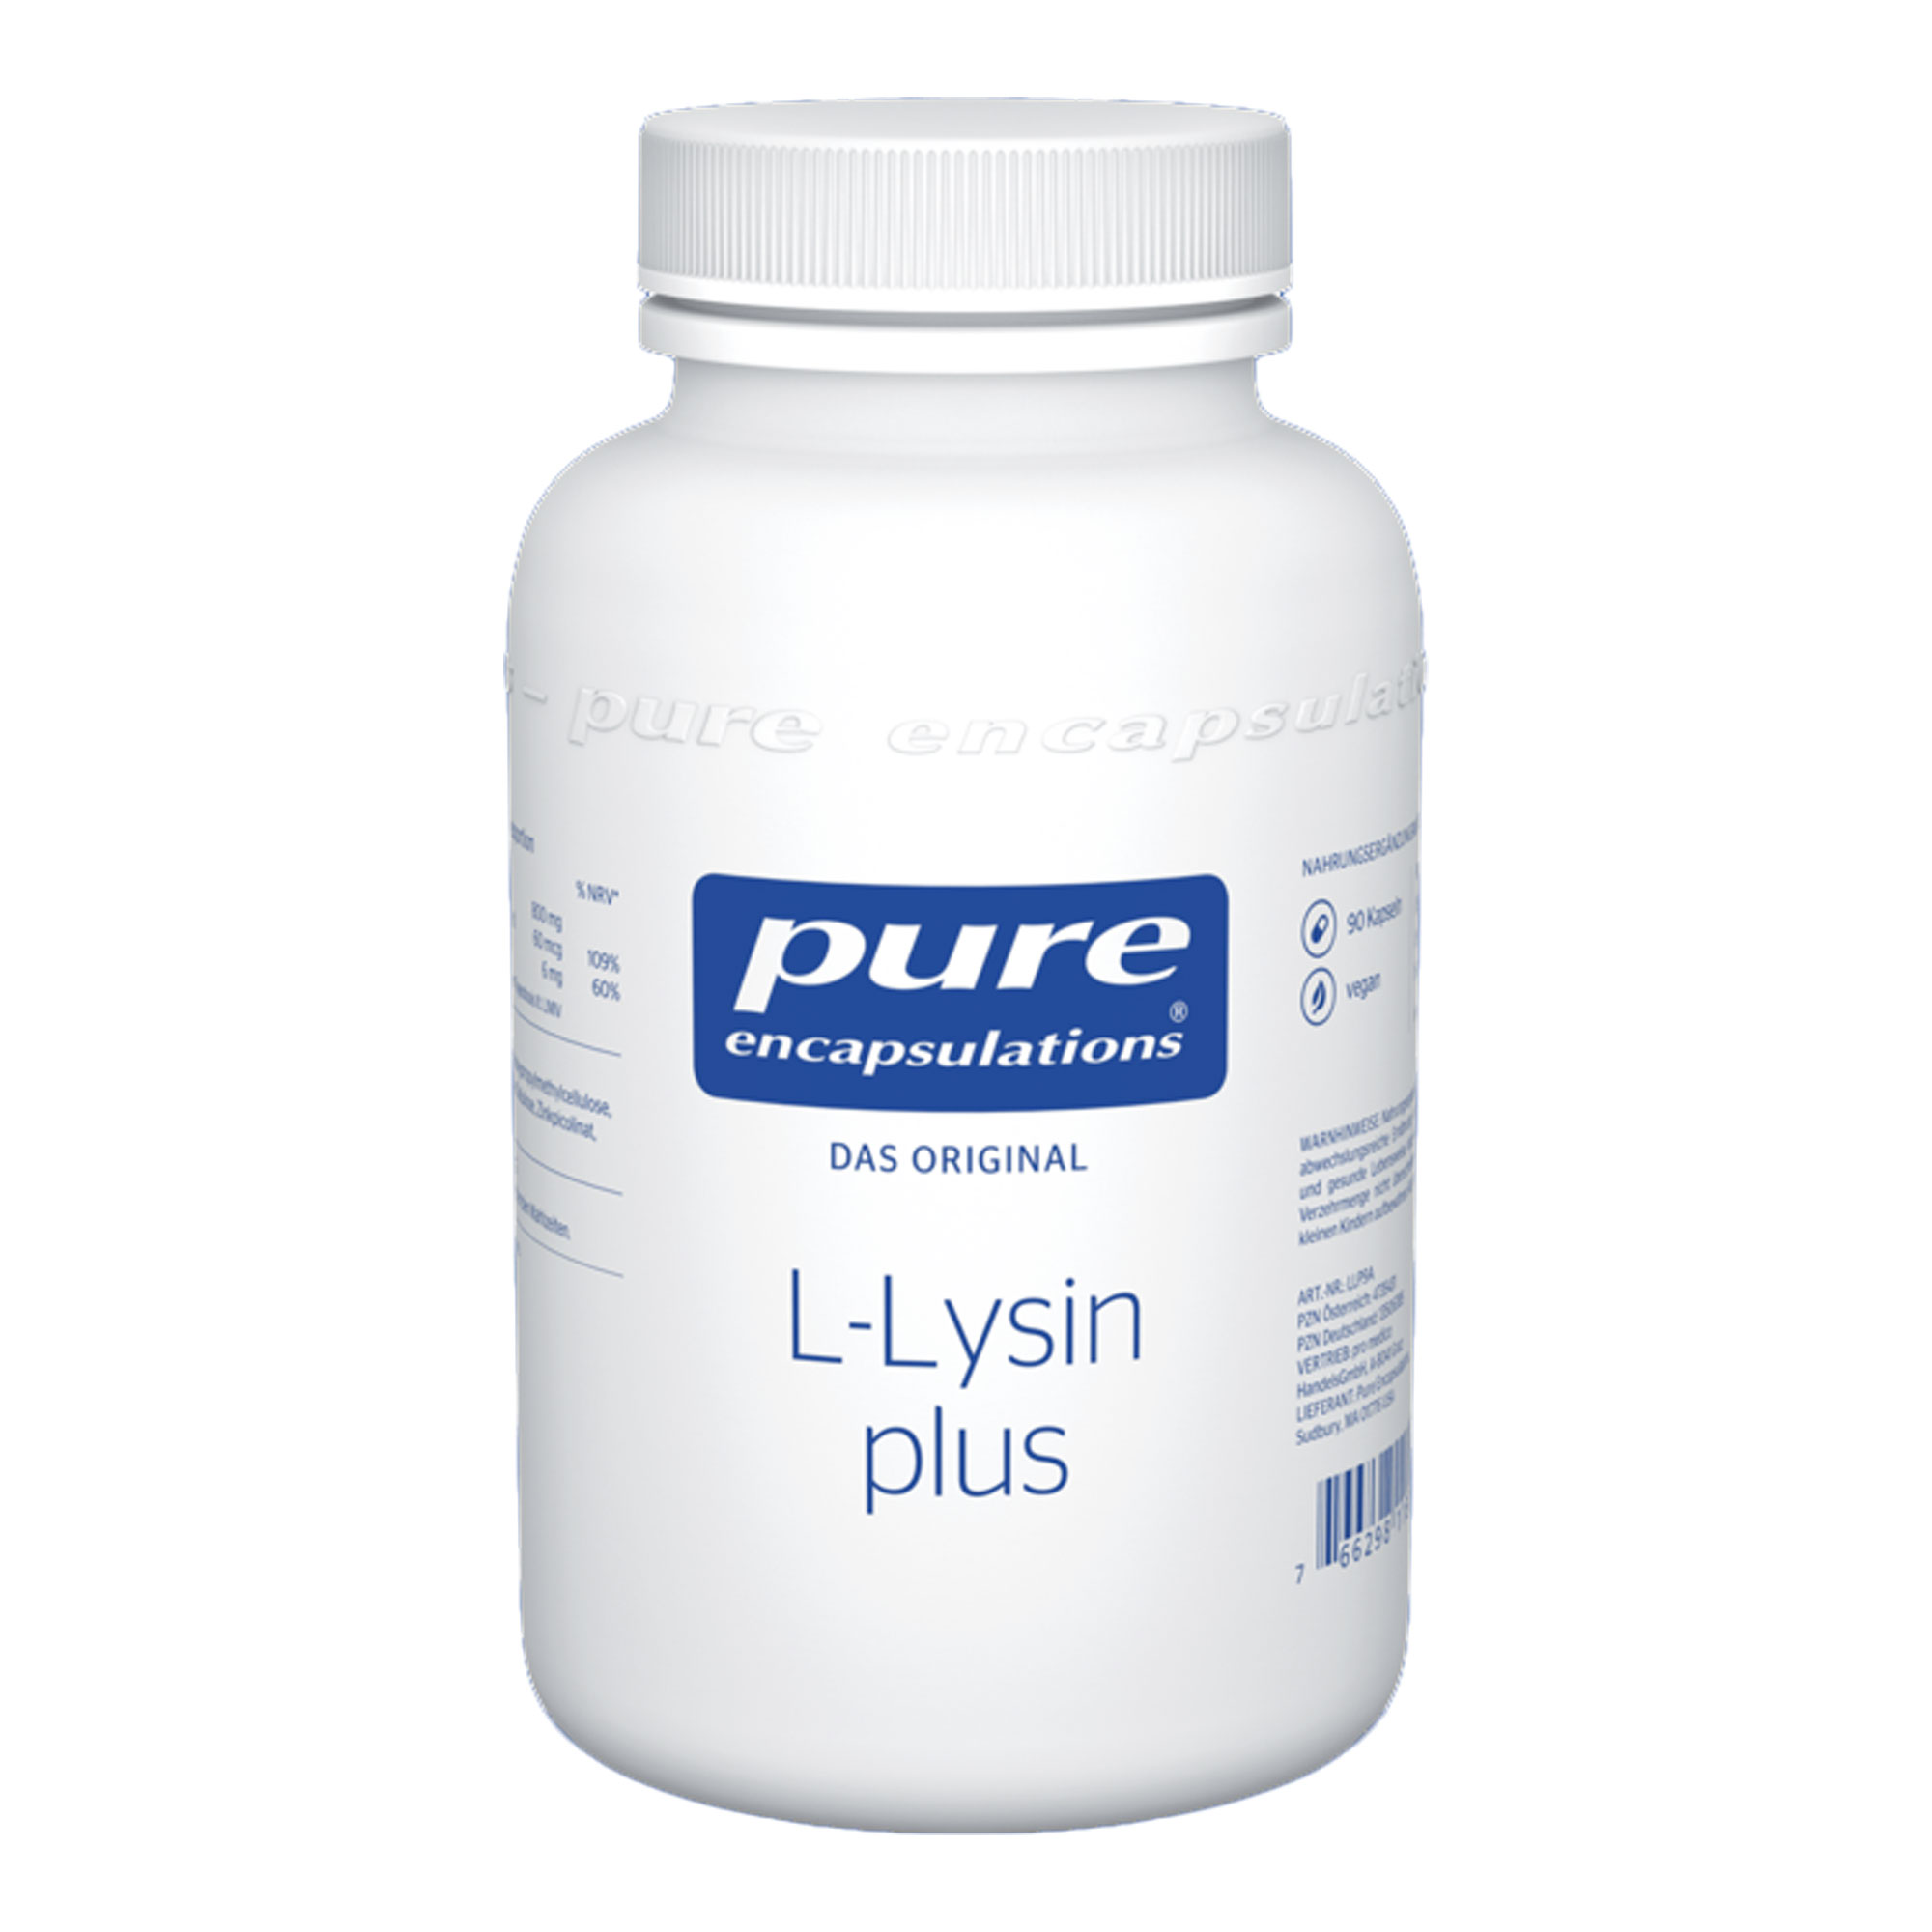 Nahrungsergänzungsmittel mit L-Lysin, Selen und Zink.